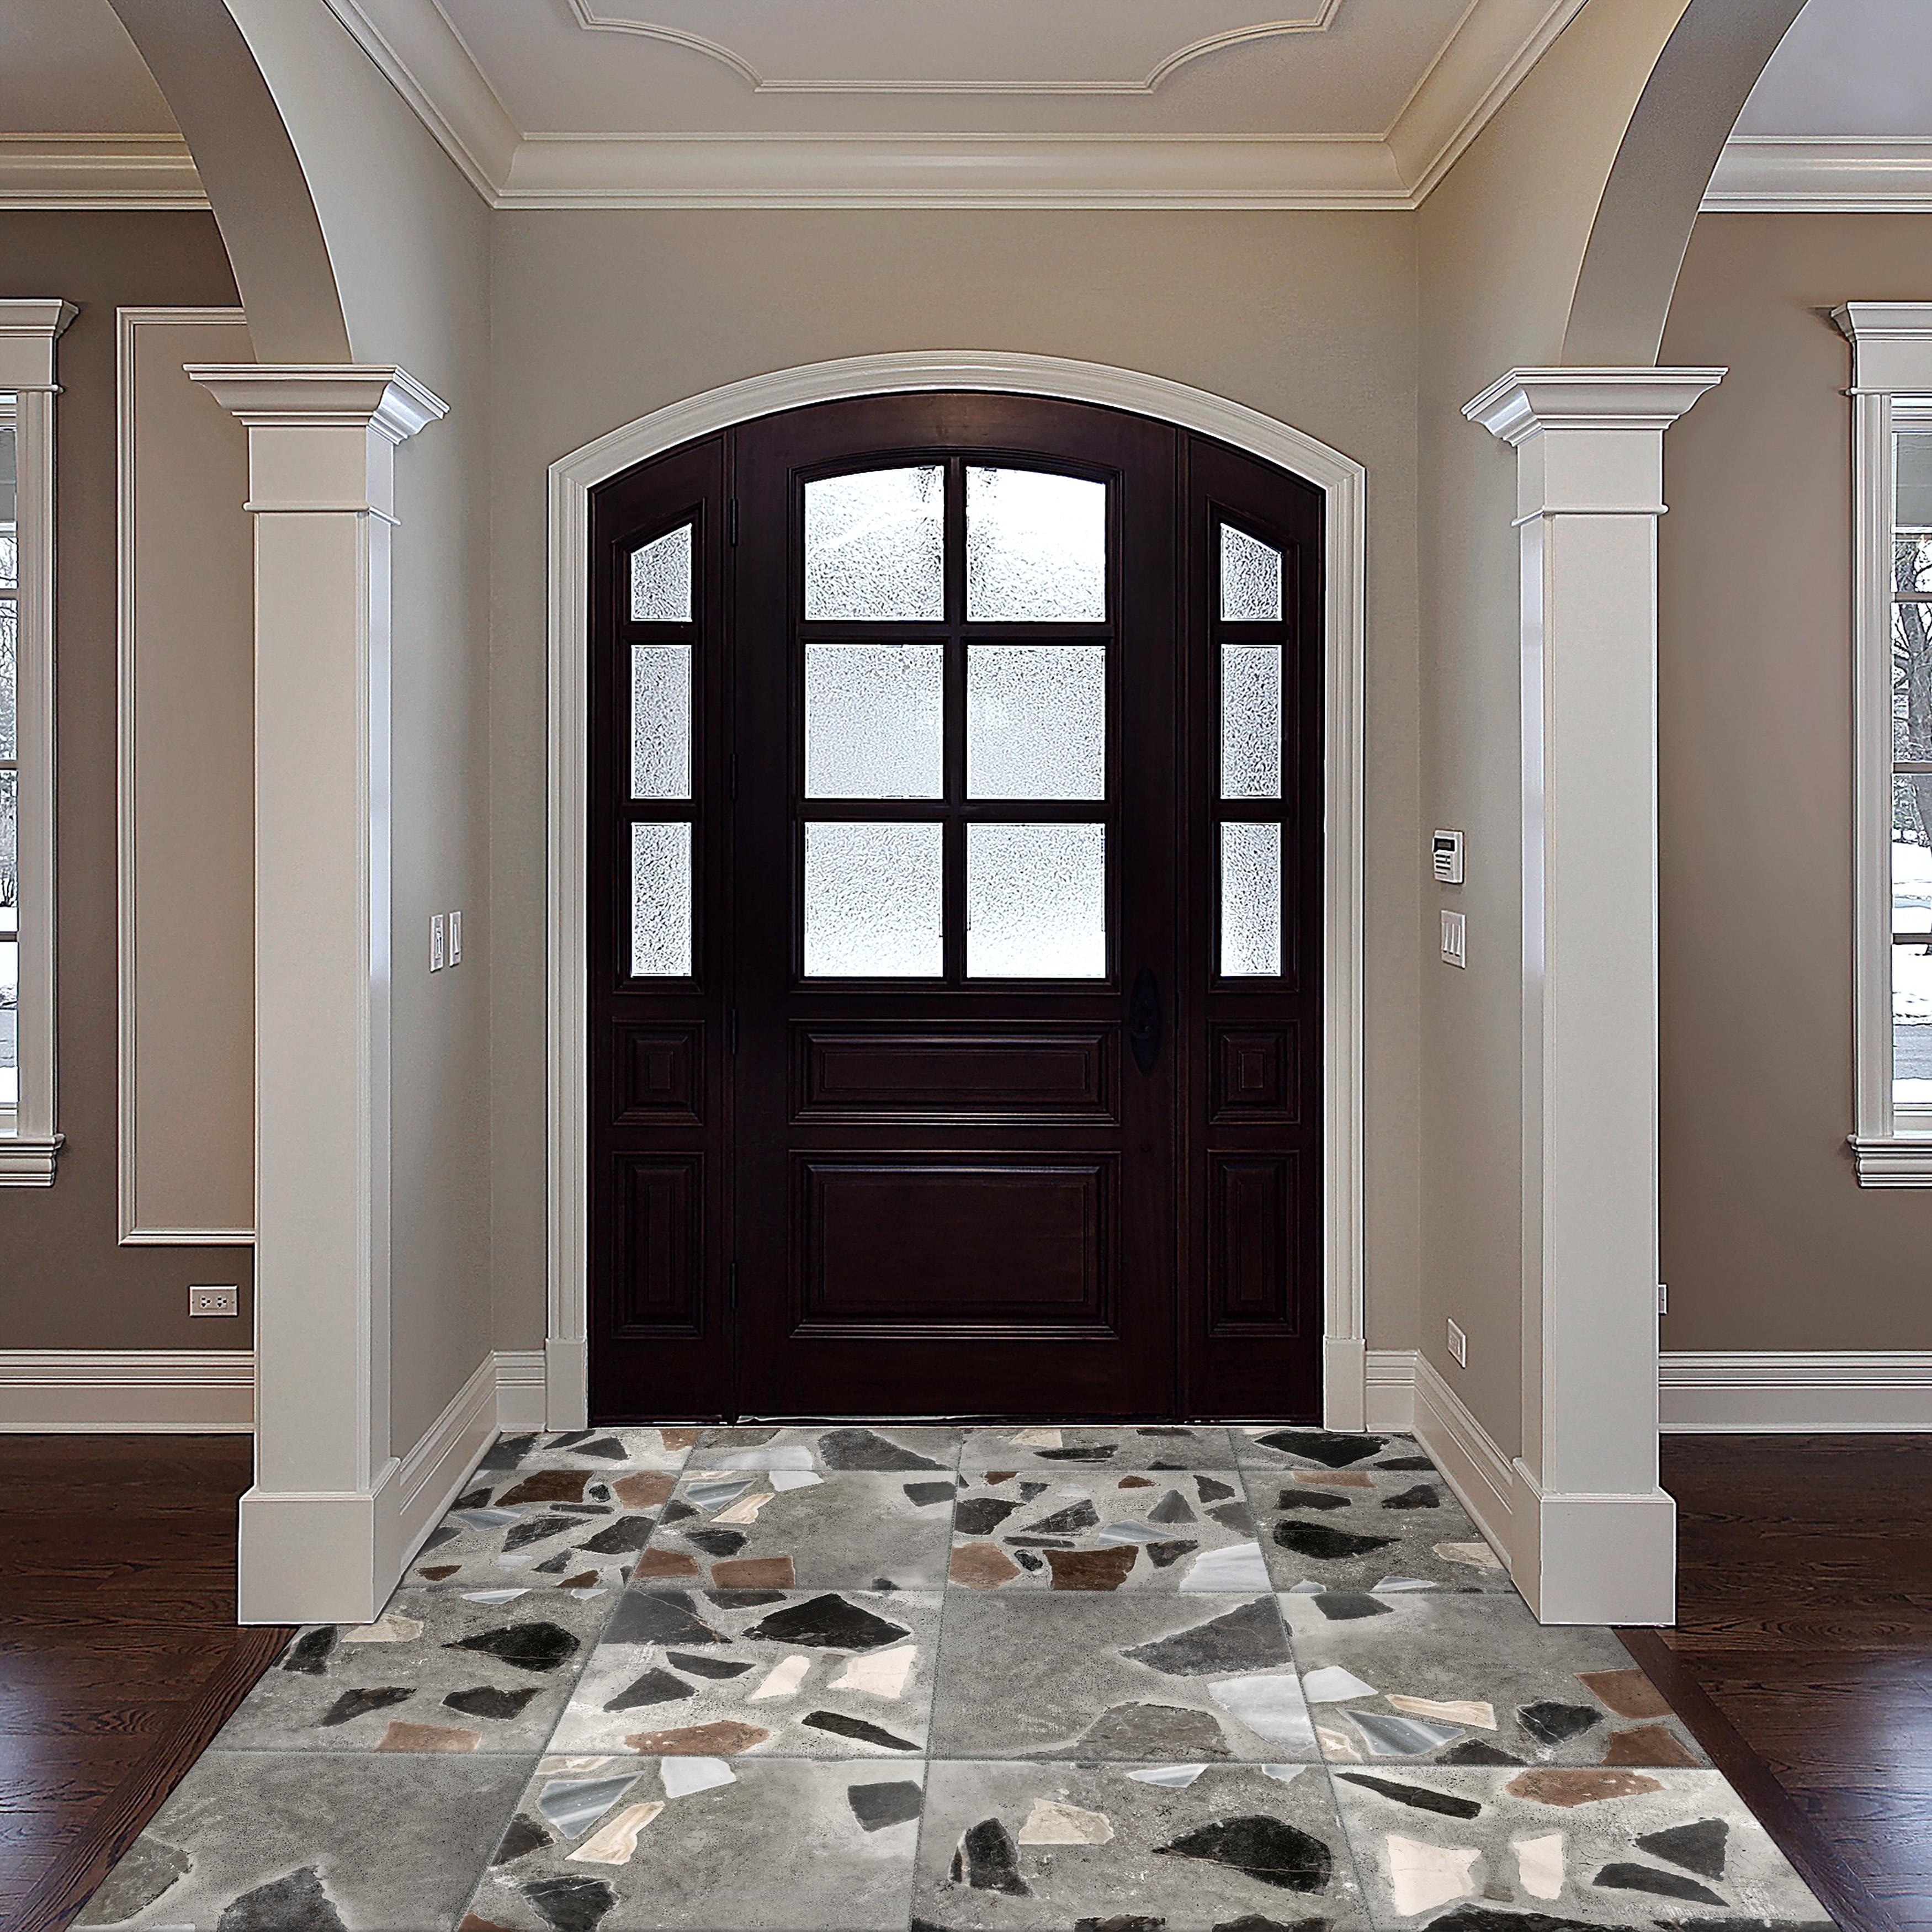 Merola Tile Rialto Decor 17.86" x 17.86" Porcelain Floor and Wall Tile